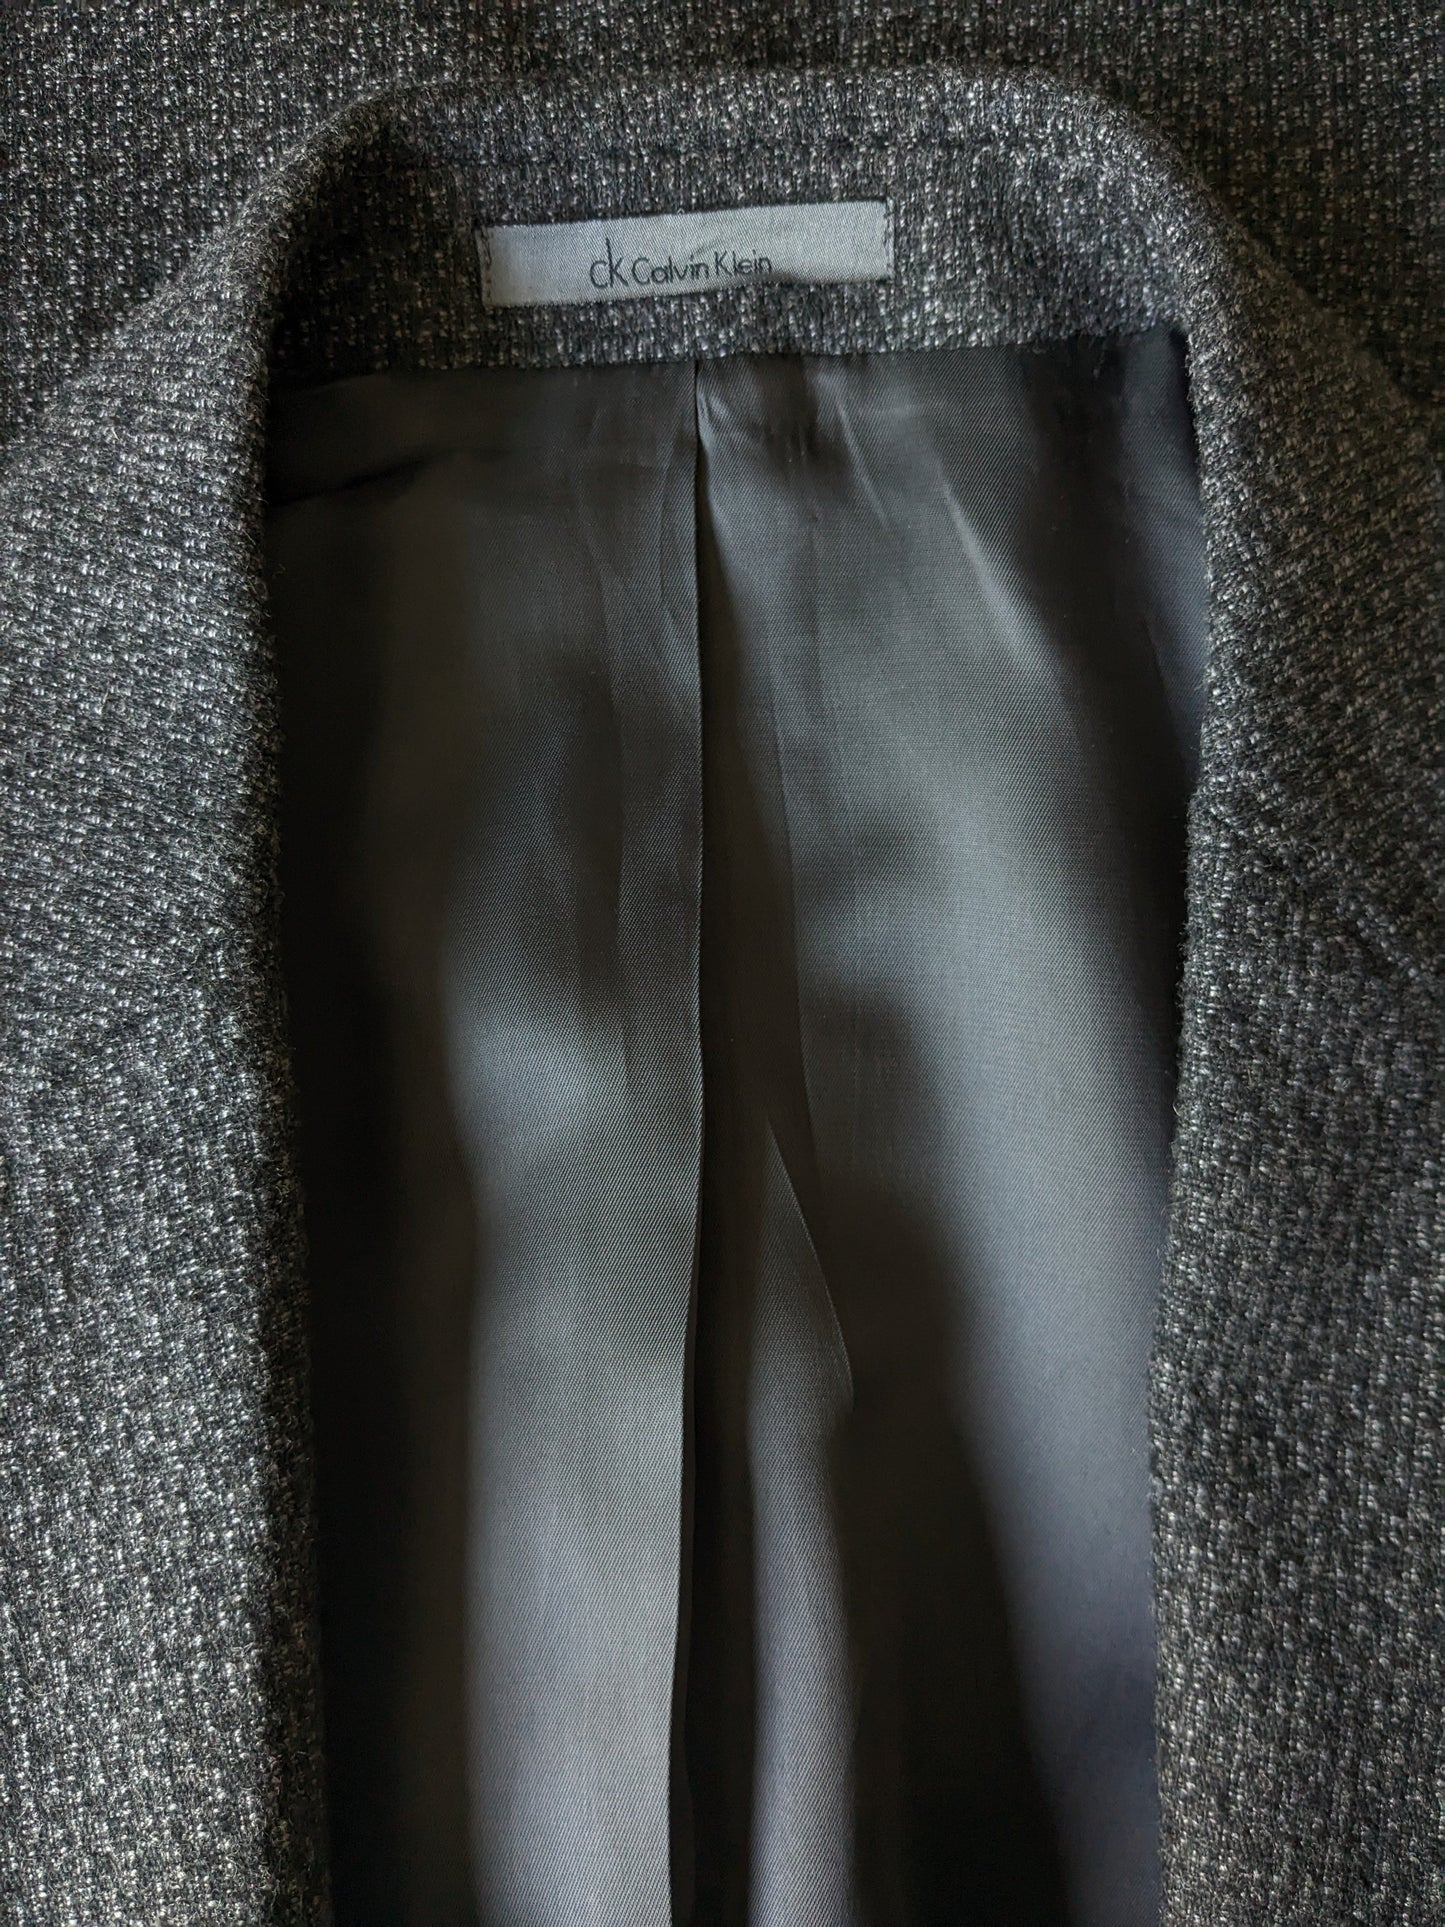 CK Calvin Klein Wainen Veste. Motif mixte noir gris. Taille 50 / M. Slim Fit.